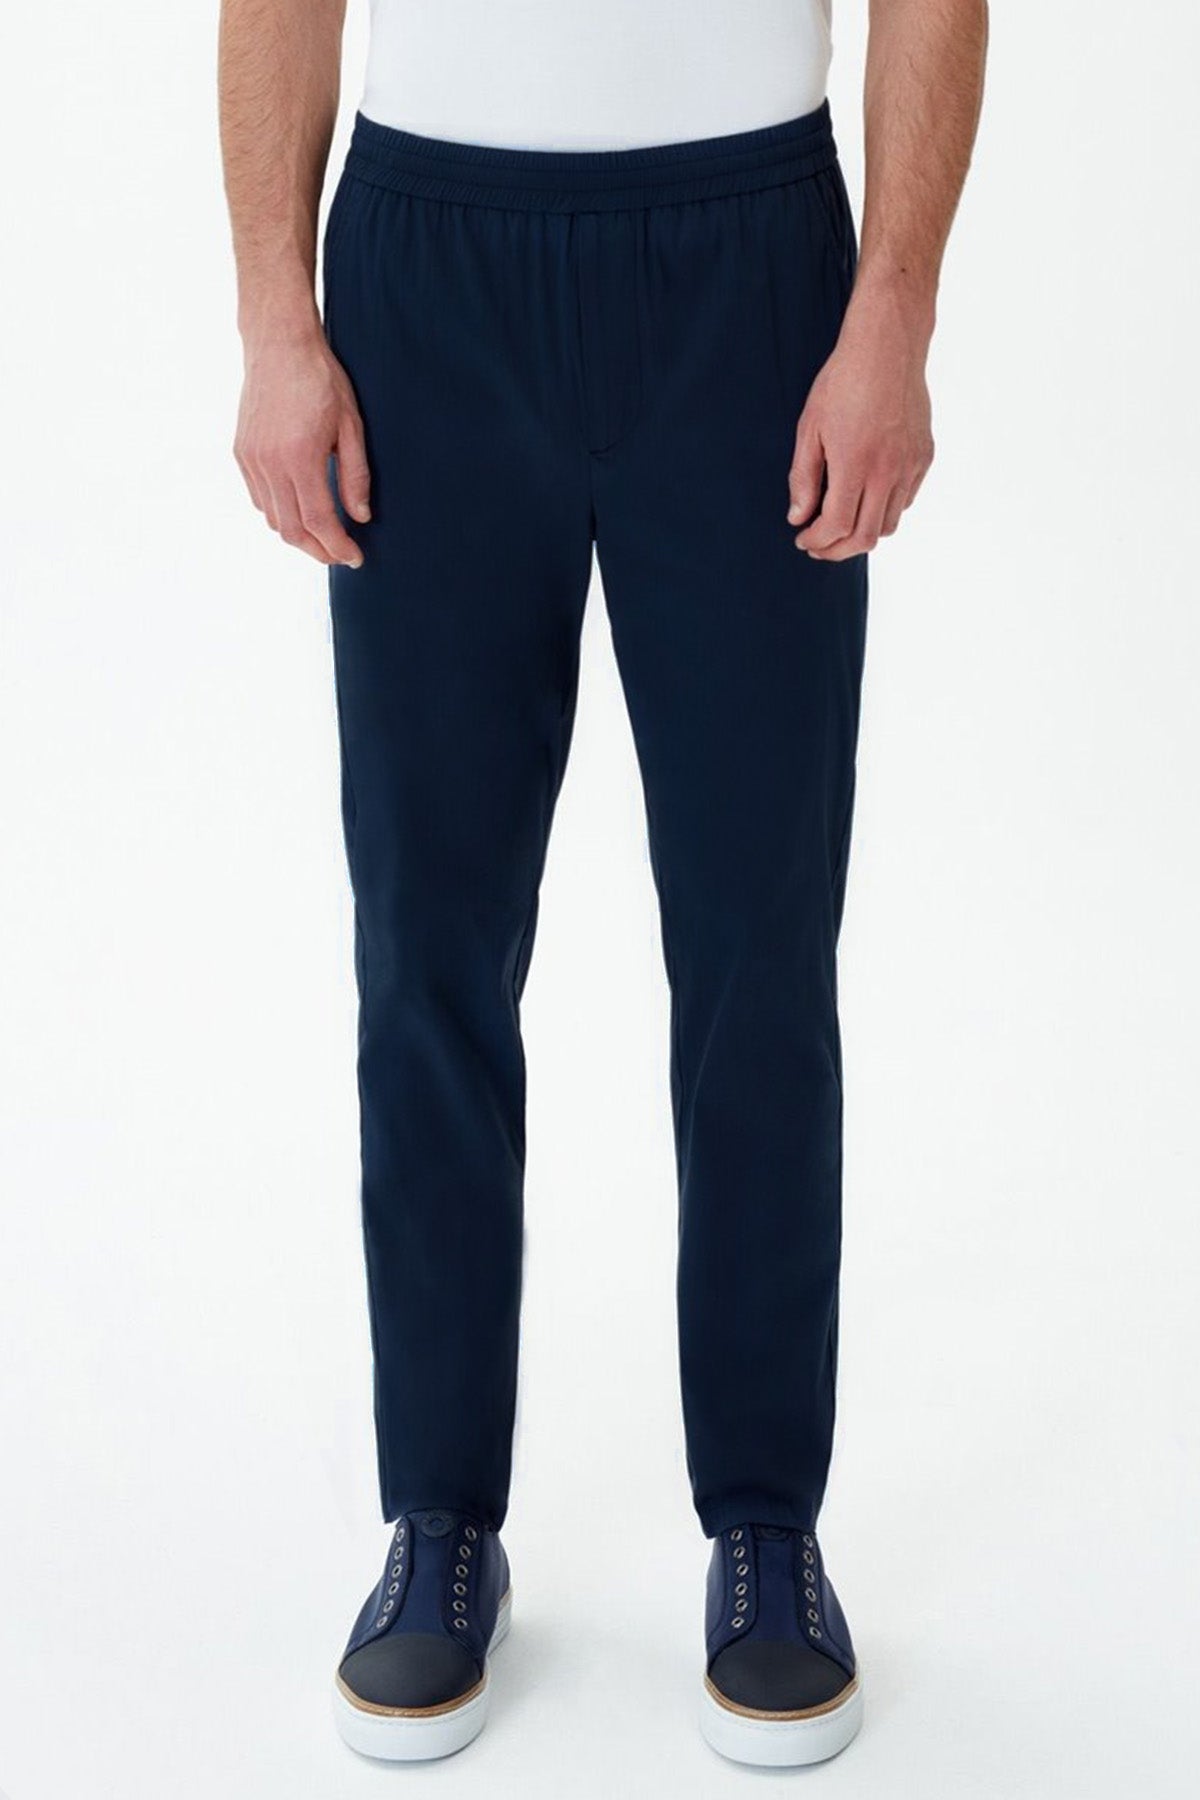 Bluemint Ace Summer Jogger Pantolon-Libas Trendy Fashion Store